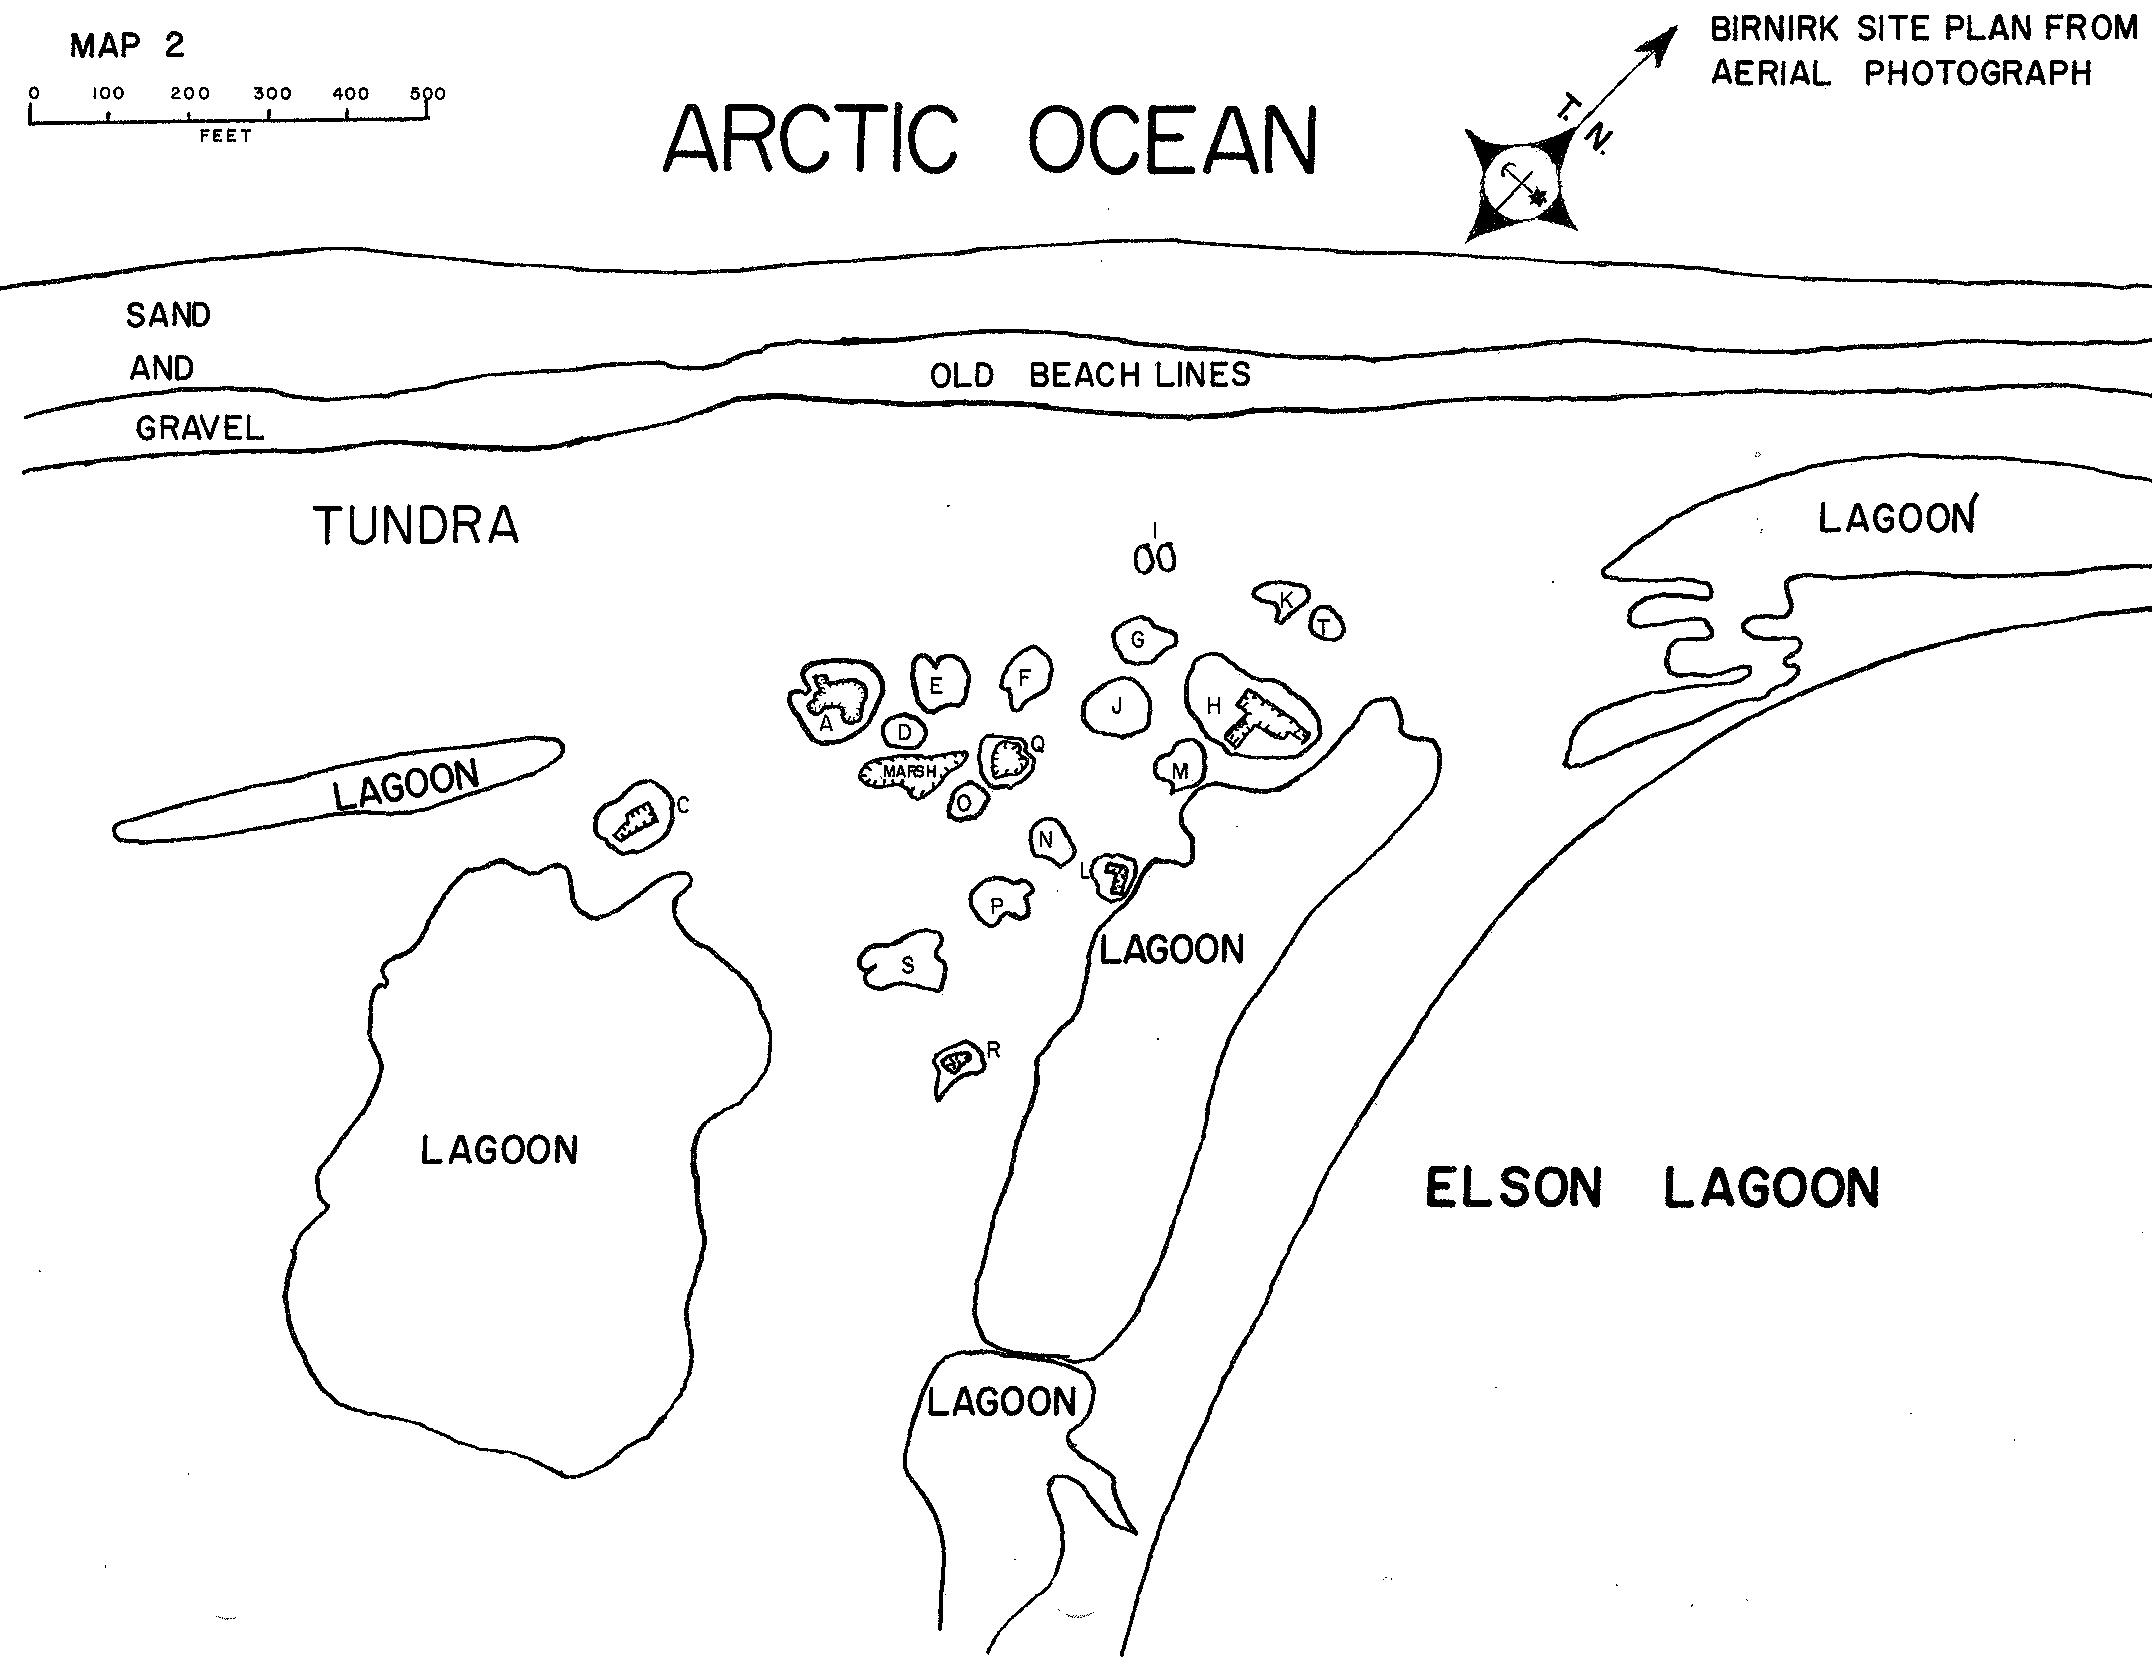 Birnirk Site Plan Map (Carter 1966)